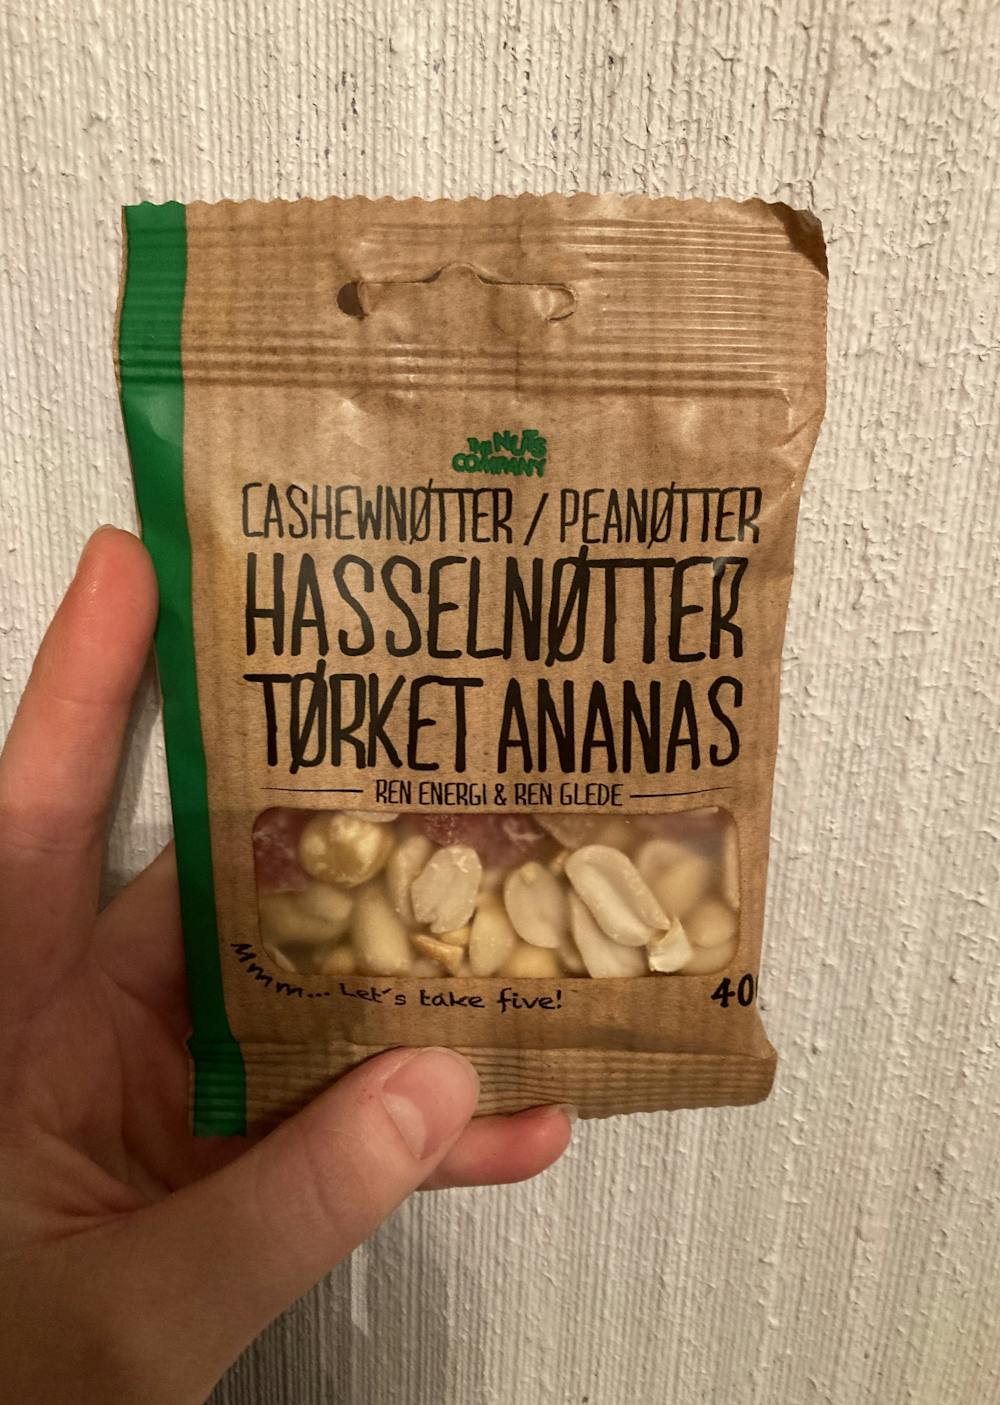 Cashewnøtter/ peanøtter/ hasselnøtter og tørket ananas, The nuts company